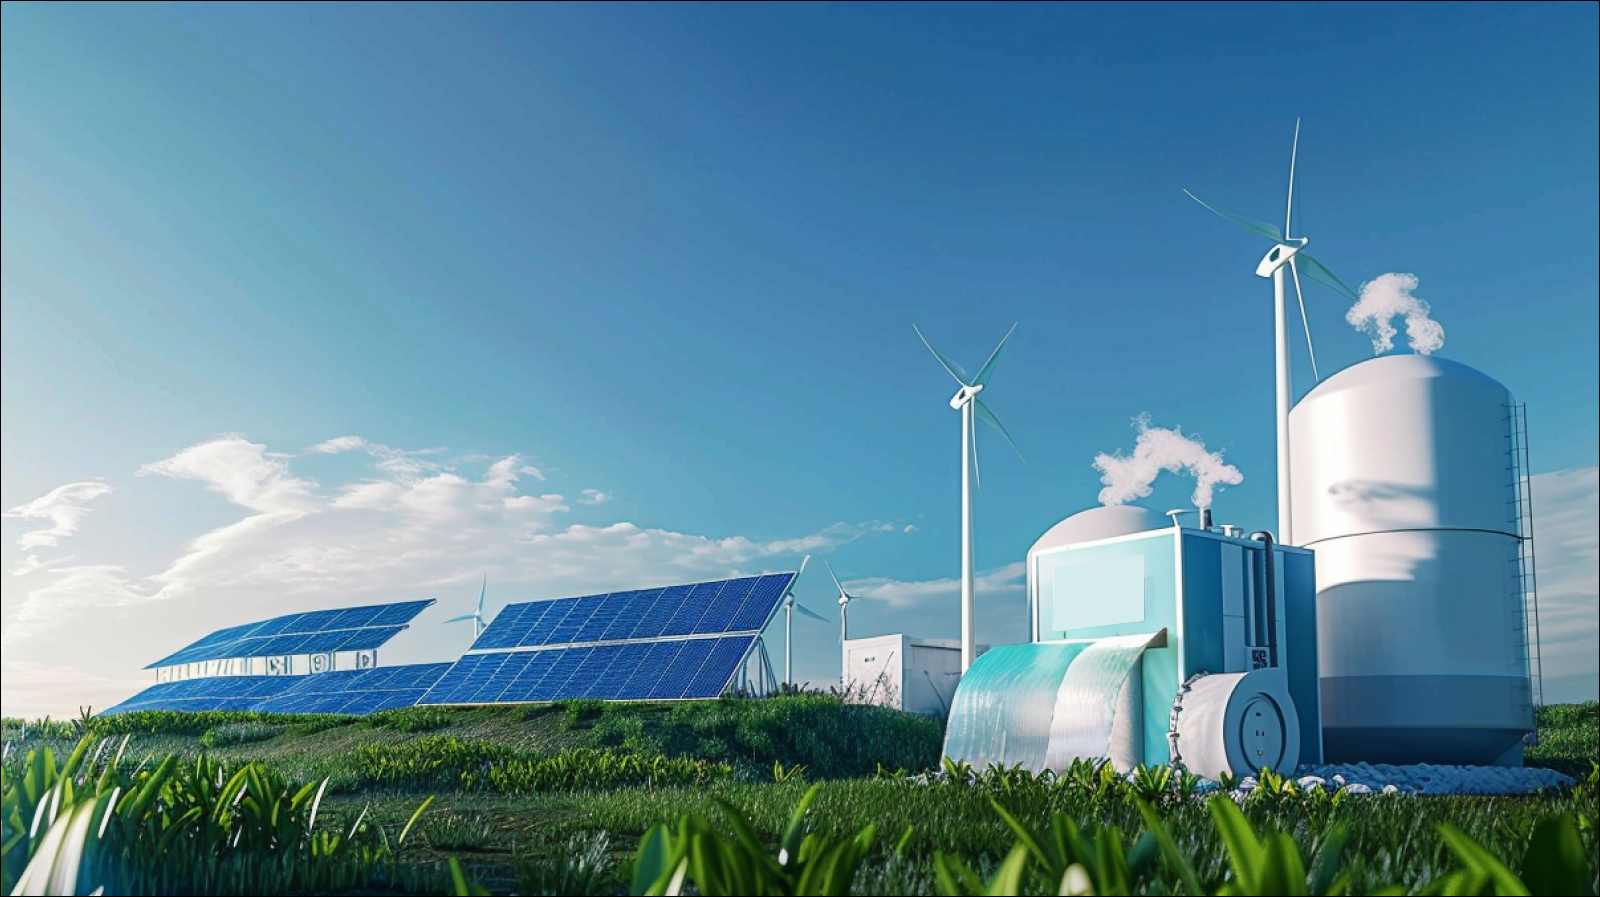 Wasserstoff-Brennstoffanlage, mit Sonnenkollektoren und Windturbinen auf einem grünen Feld unter einem klaren blauen Himmel